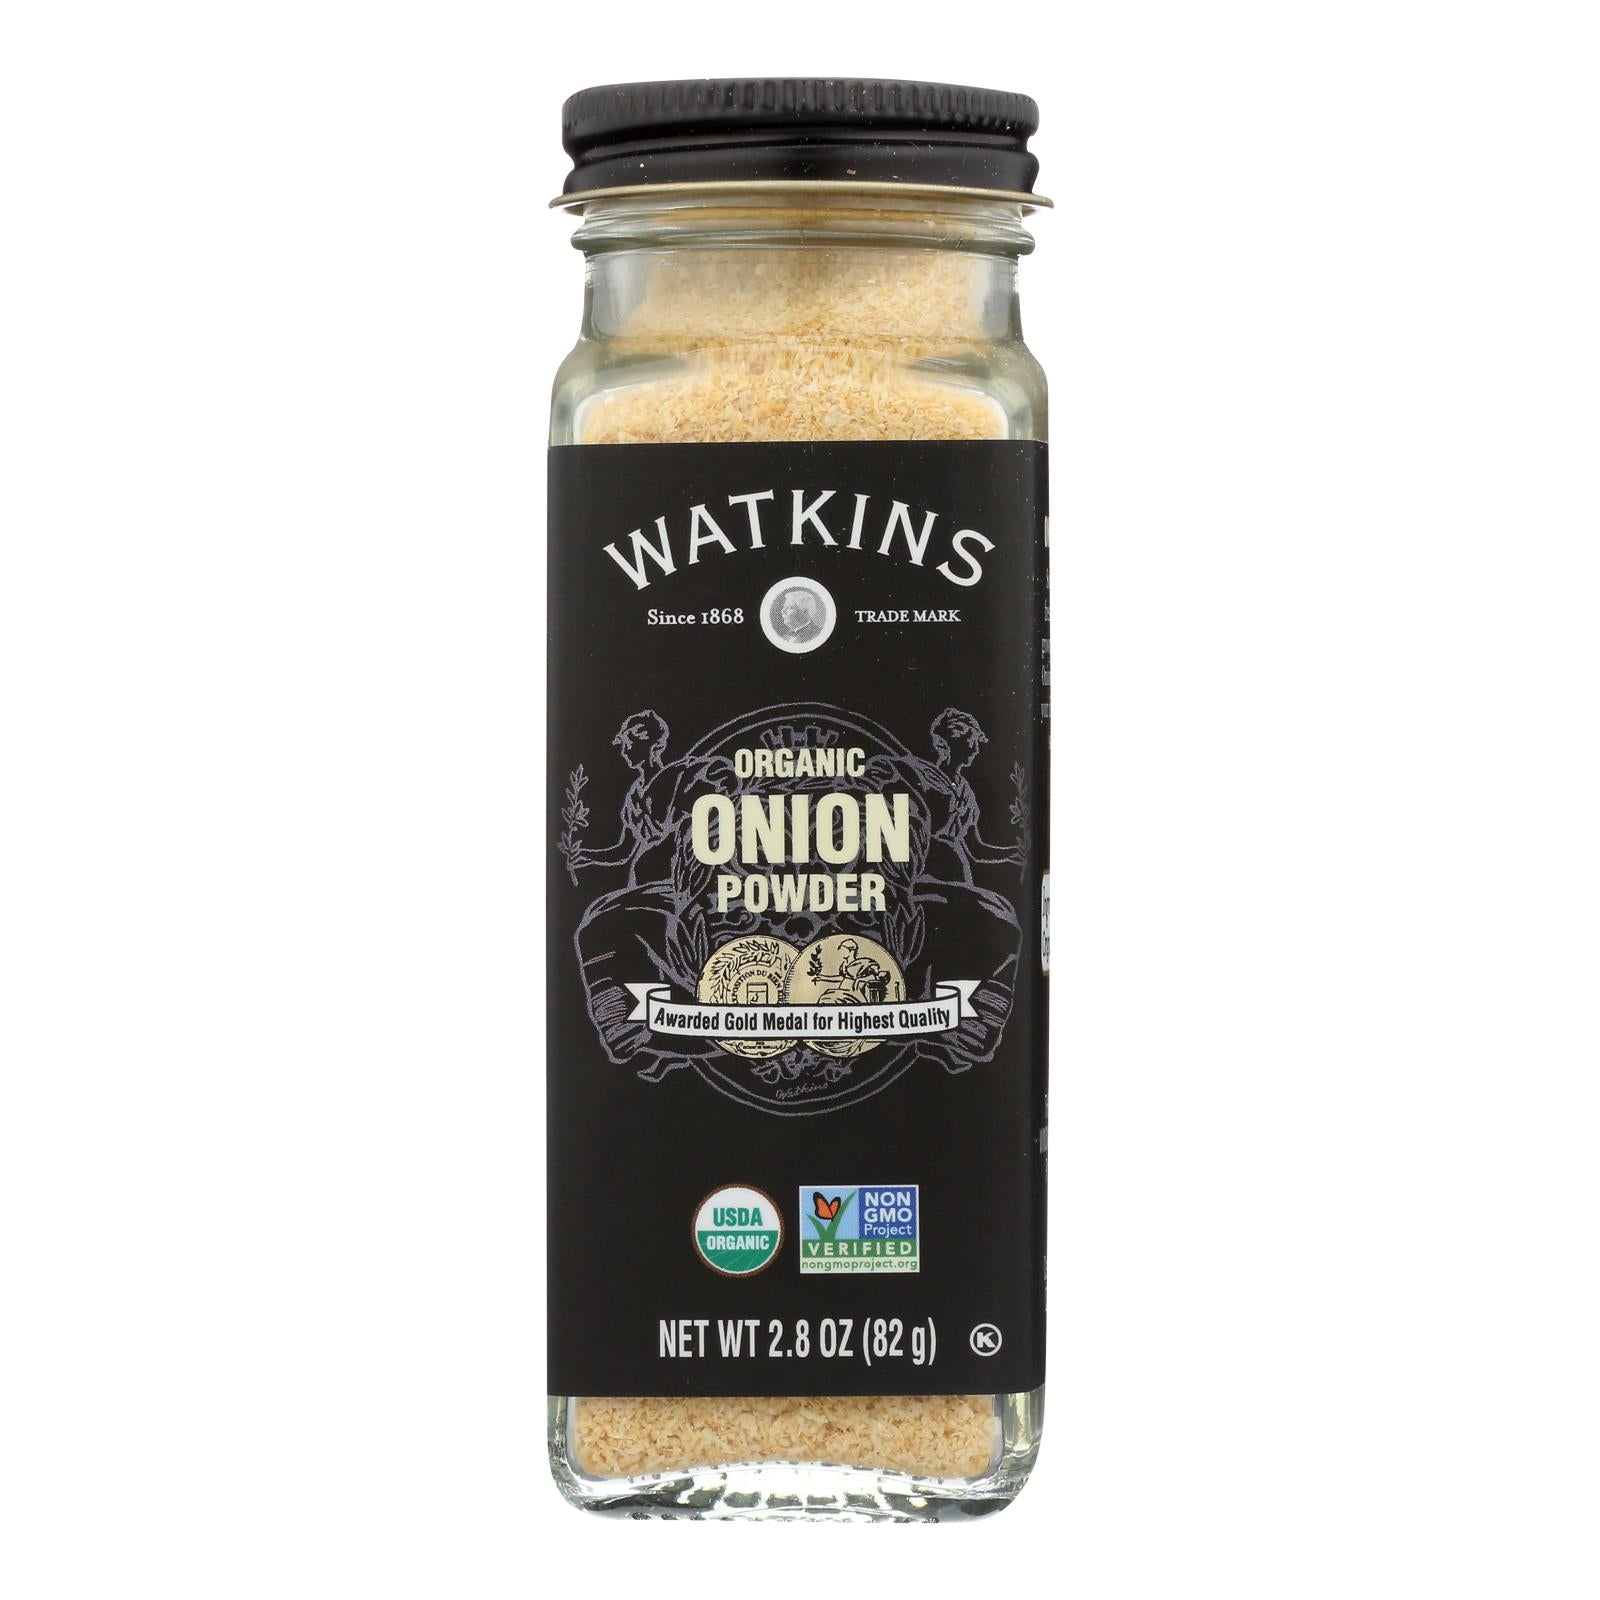 Watkins - Onion Powder - 1 Each - 2.8 Oz